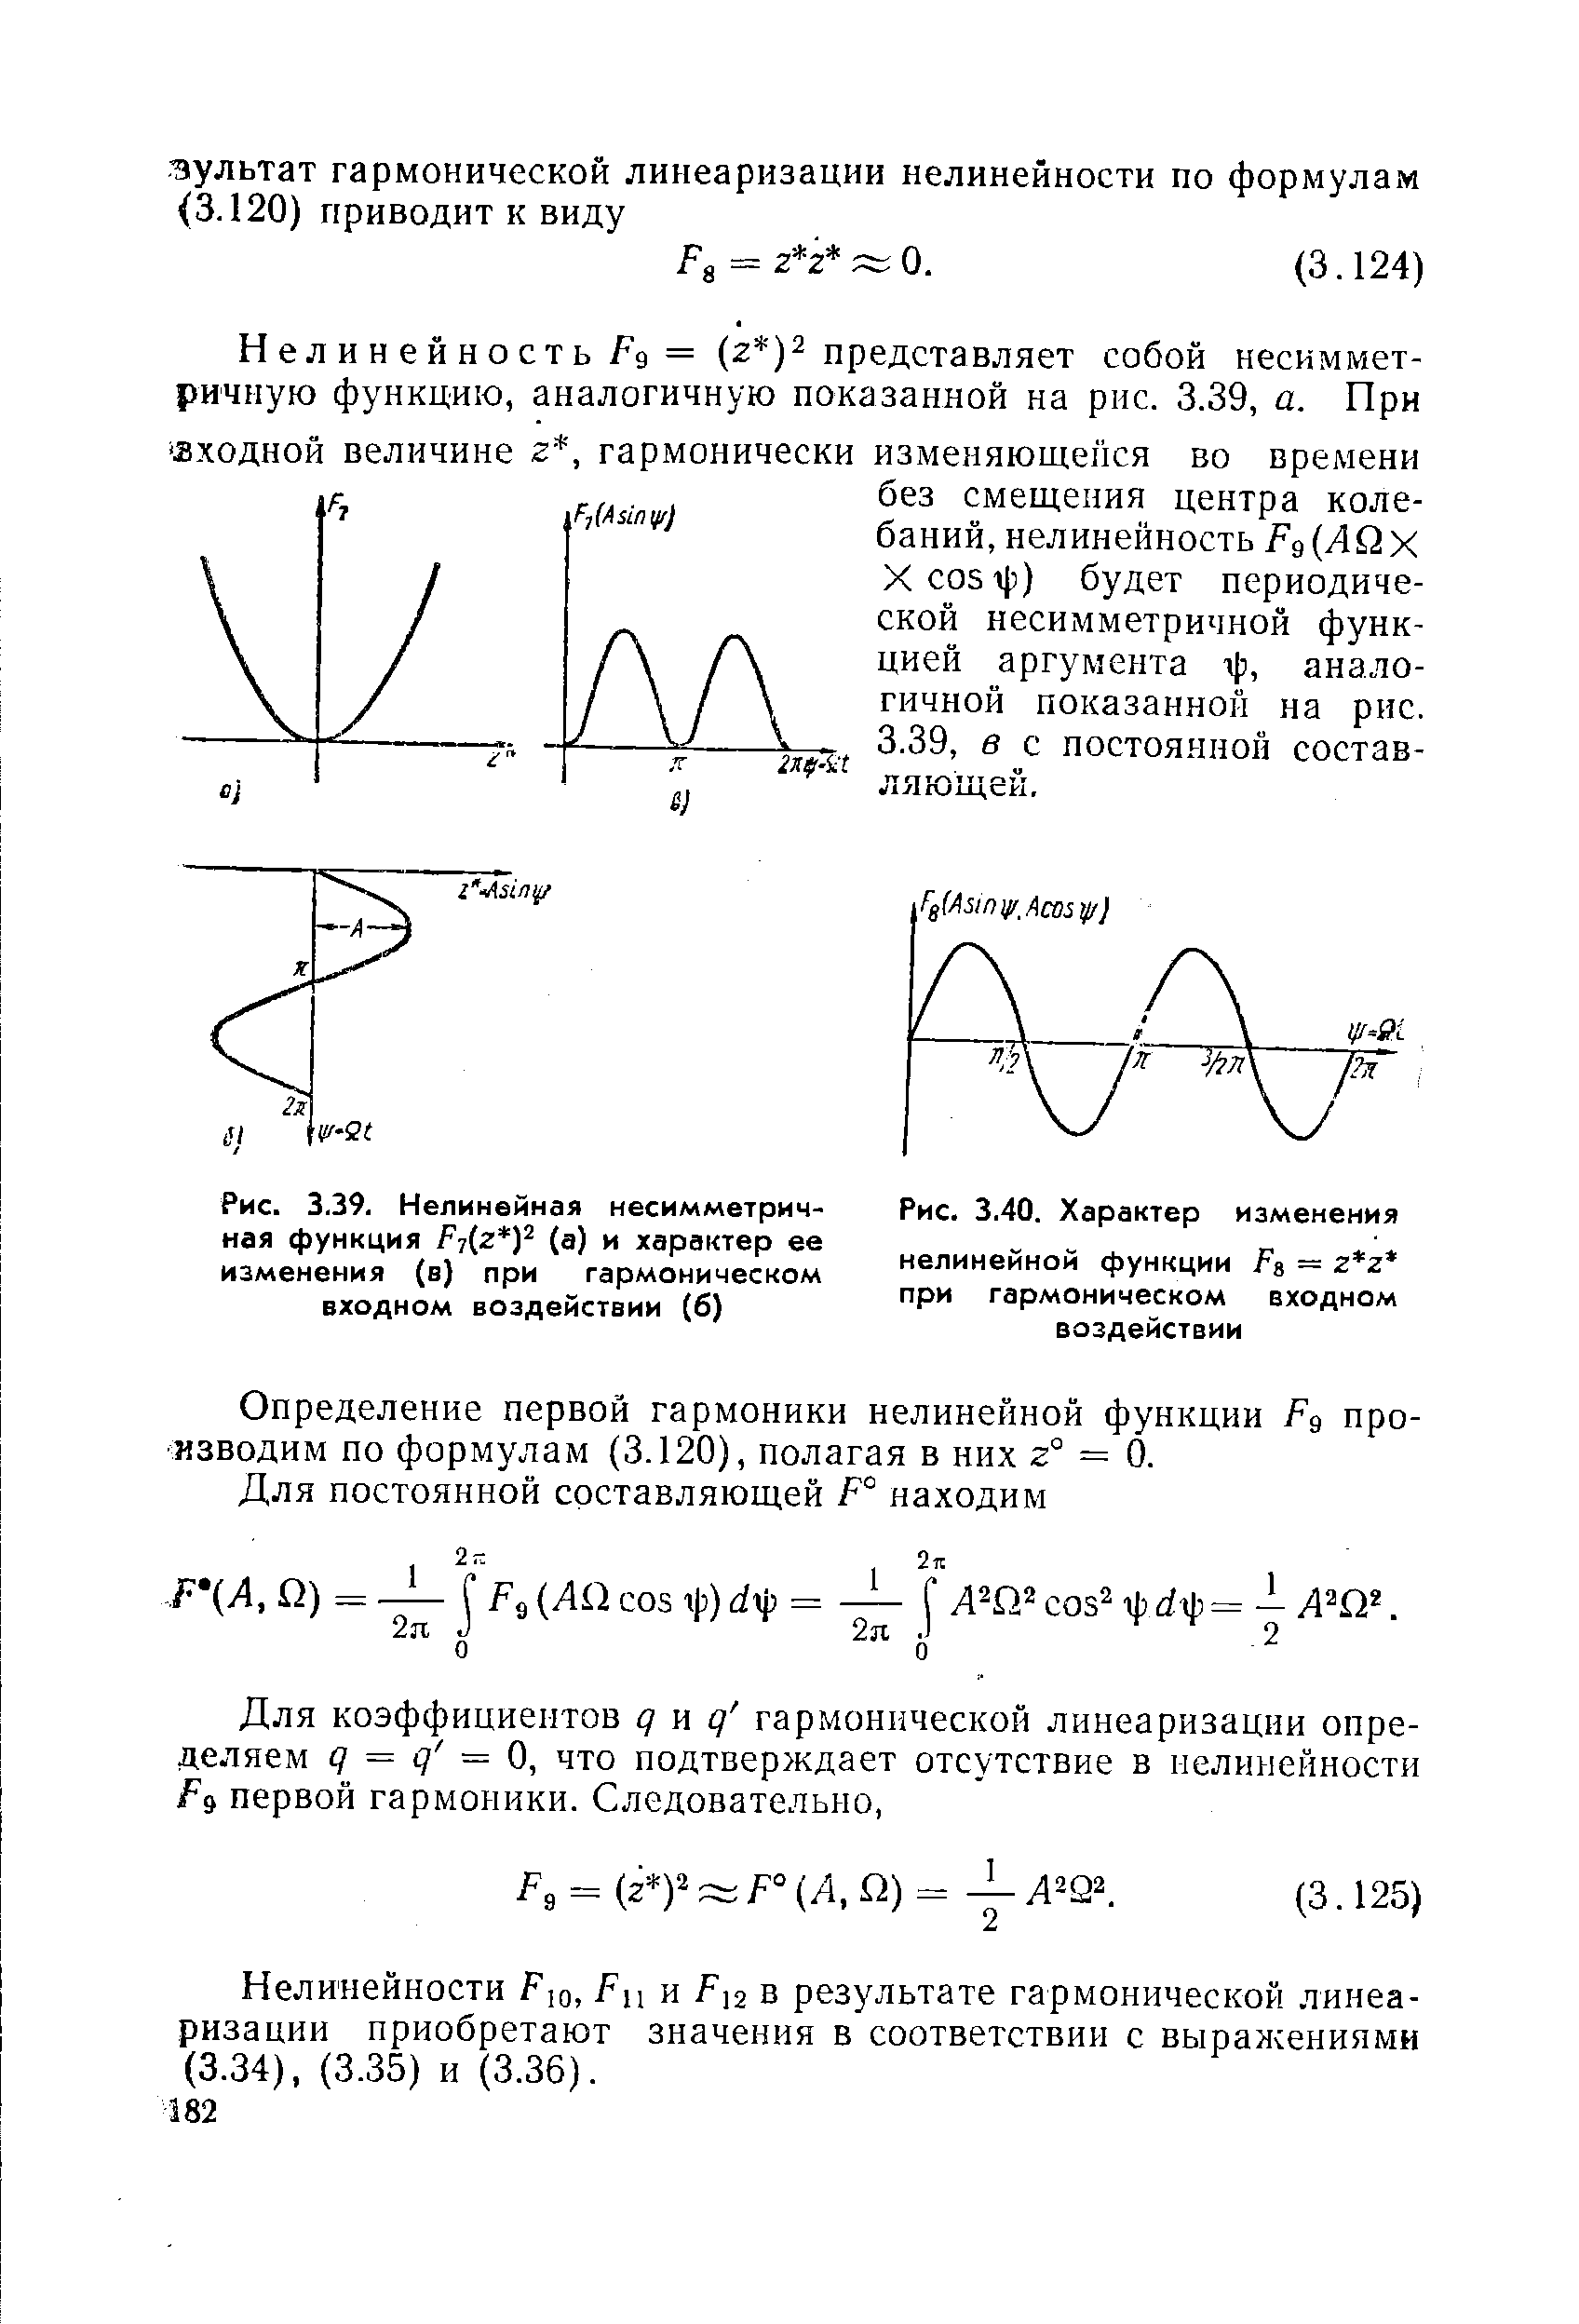 Рис. 3.39. Нелинейная несимметричная функция Fj z y (а) и характер ее изменения (в) при гармоническом входном воздействии (б)
